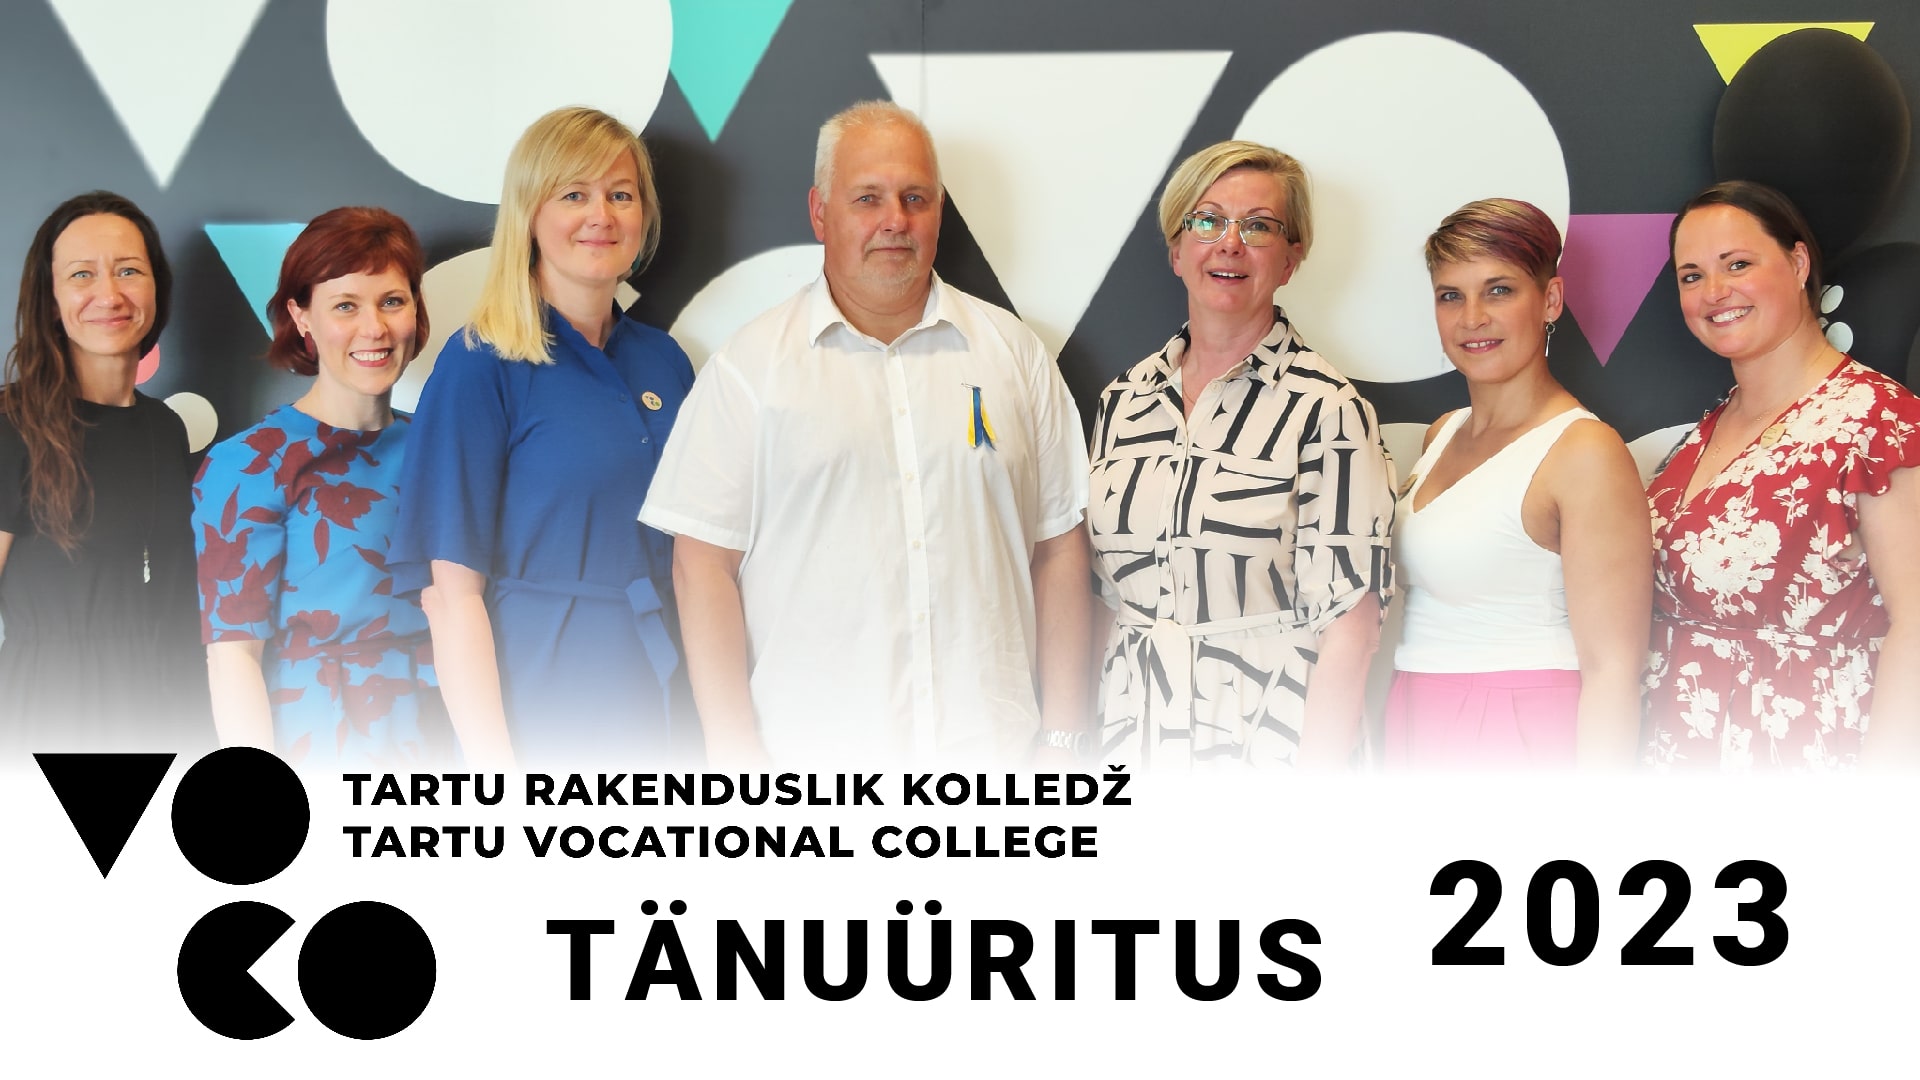 VOCO Tartu Rakendusliku Kolledži tänuüritus 2023 kokkuvõte